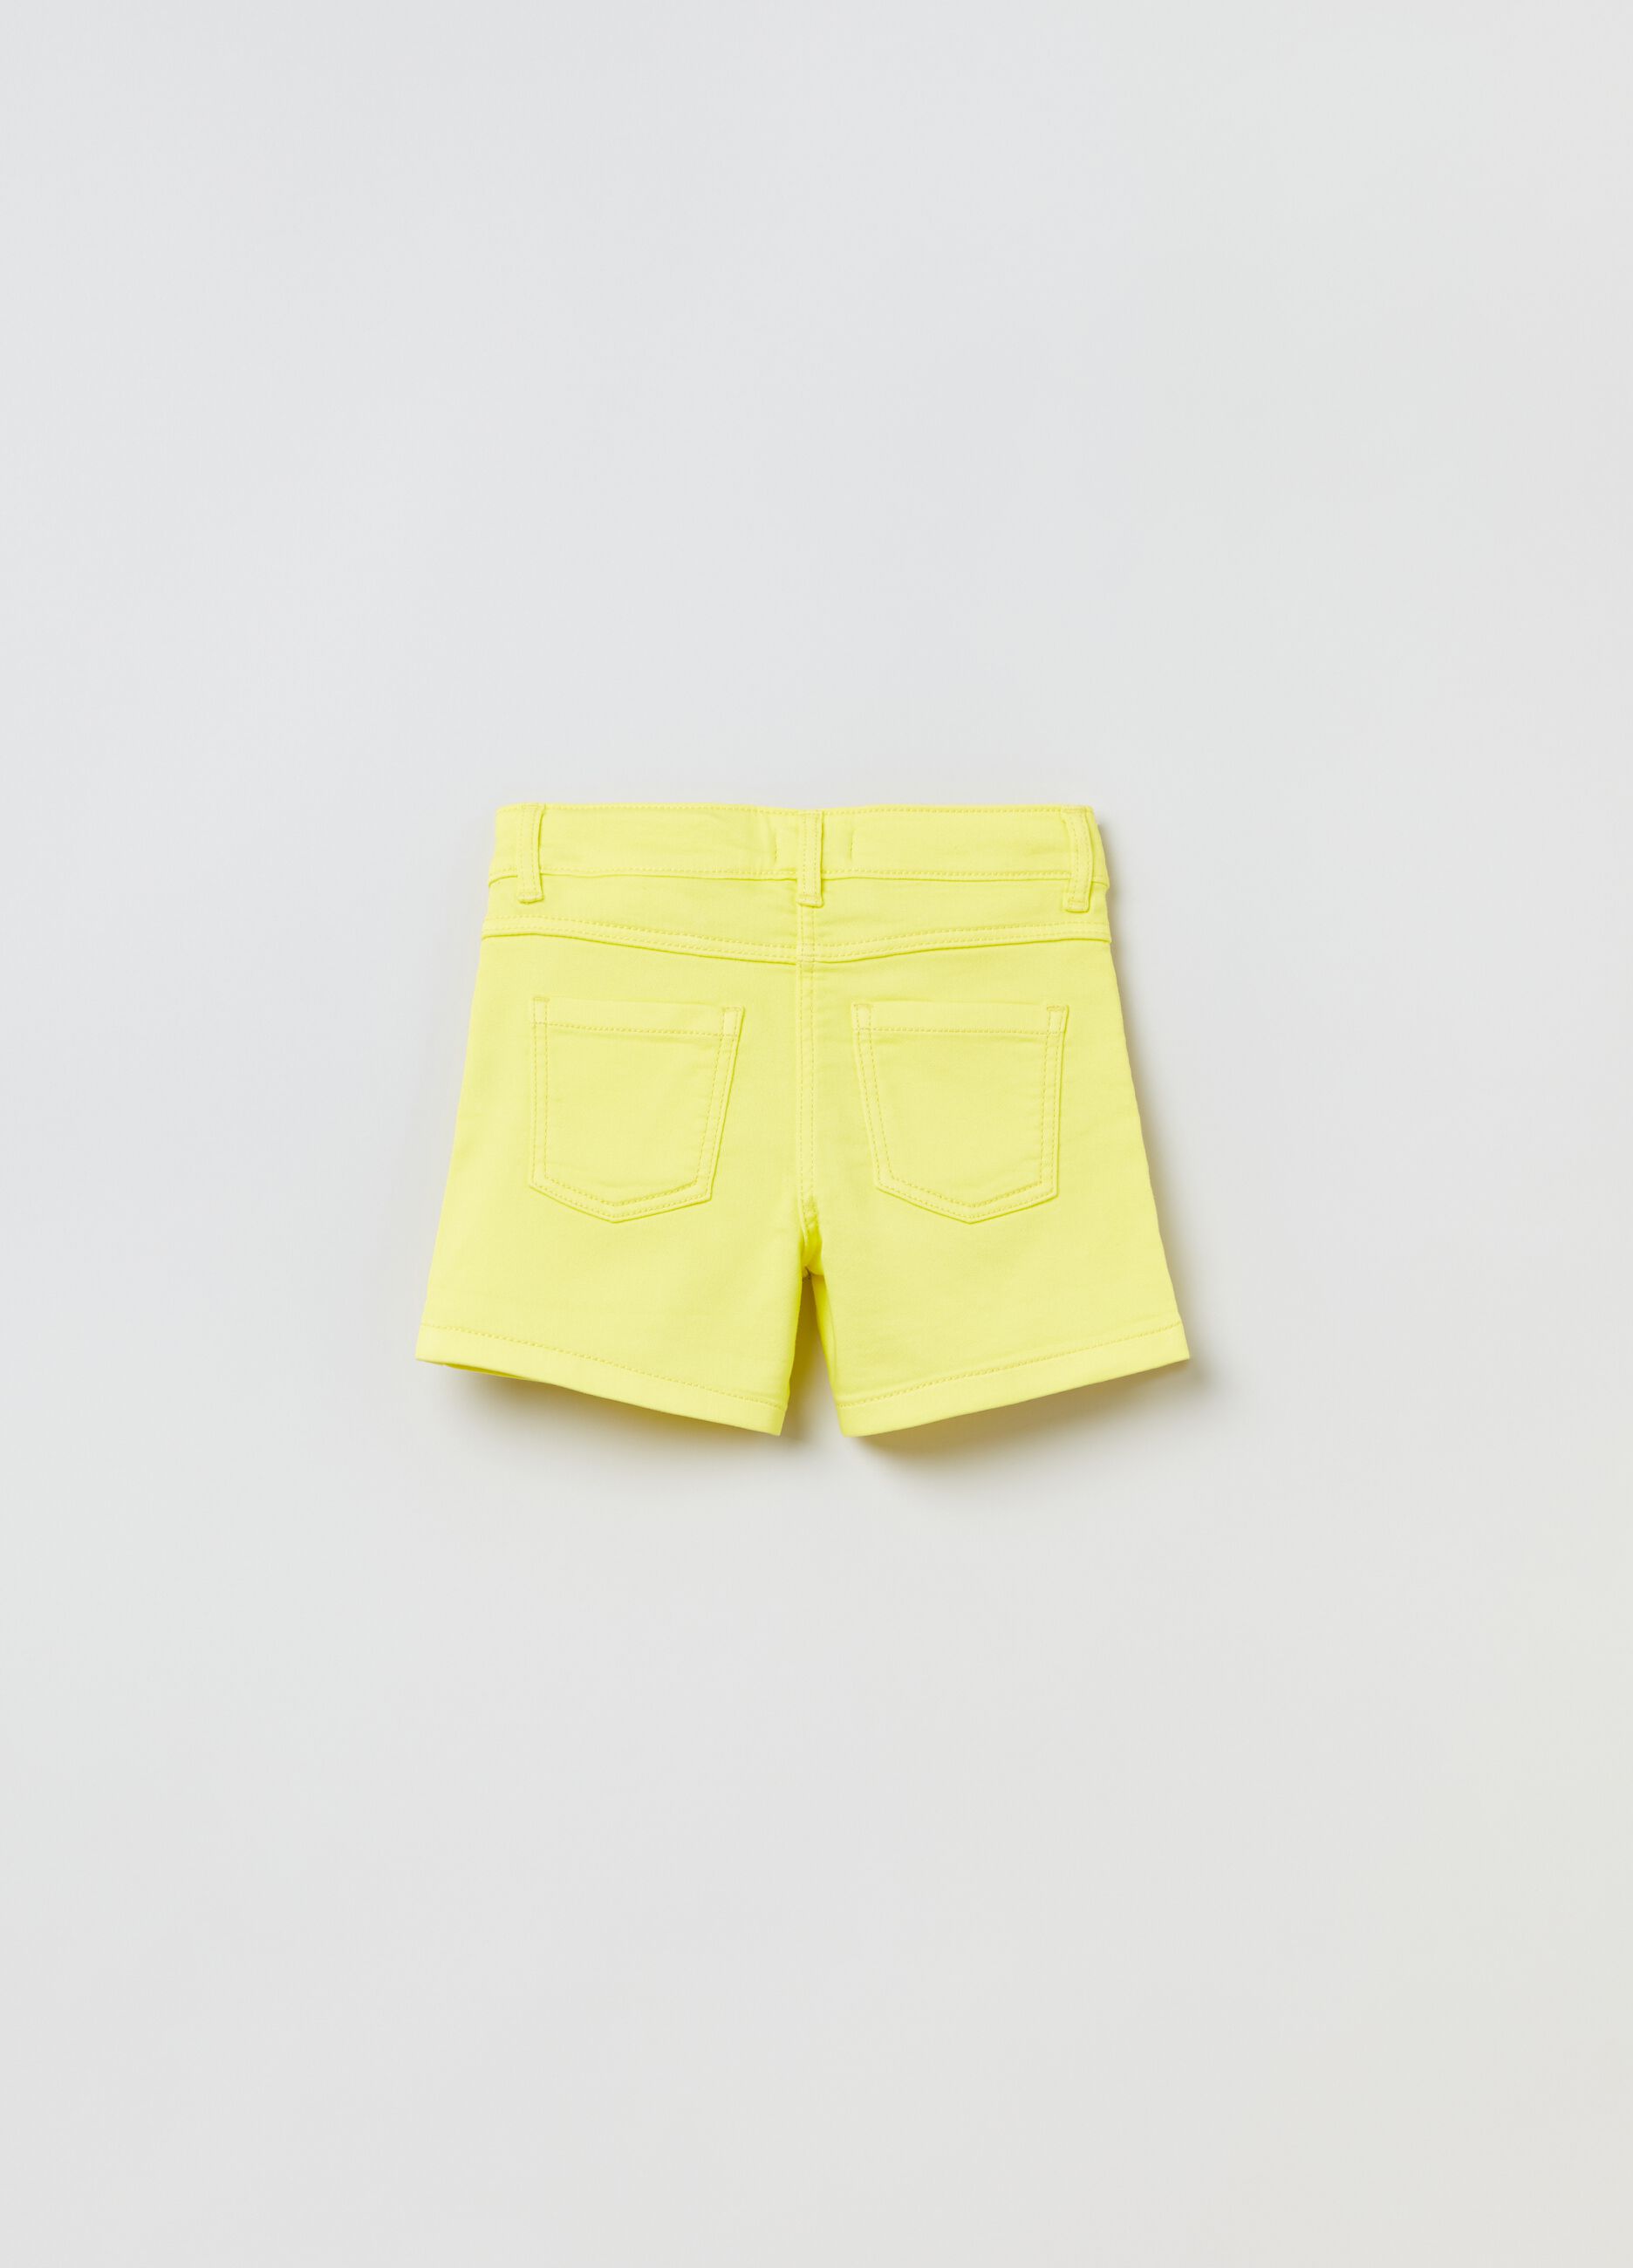 5-pocket stretch shorts